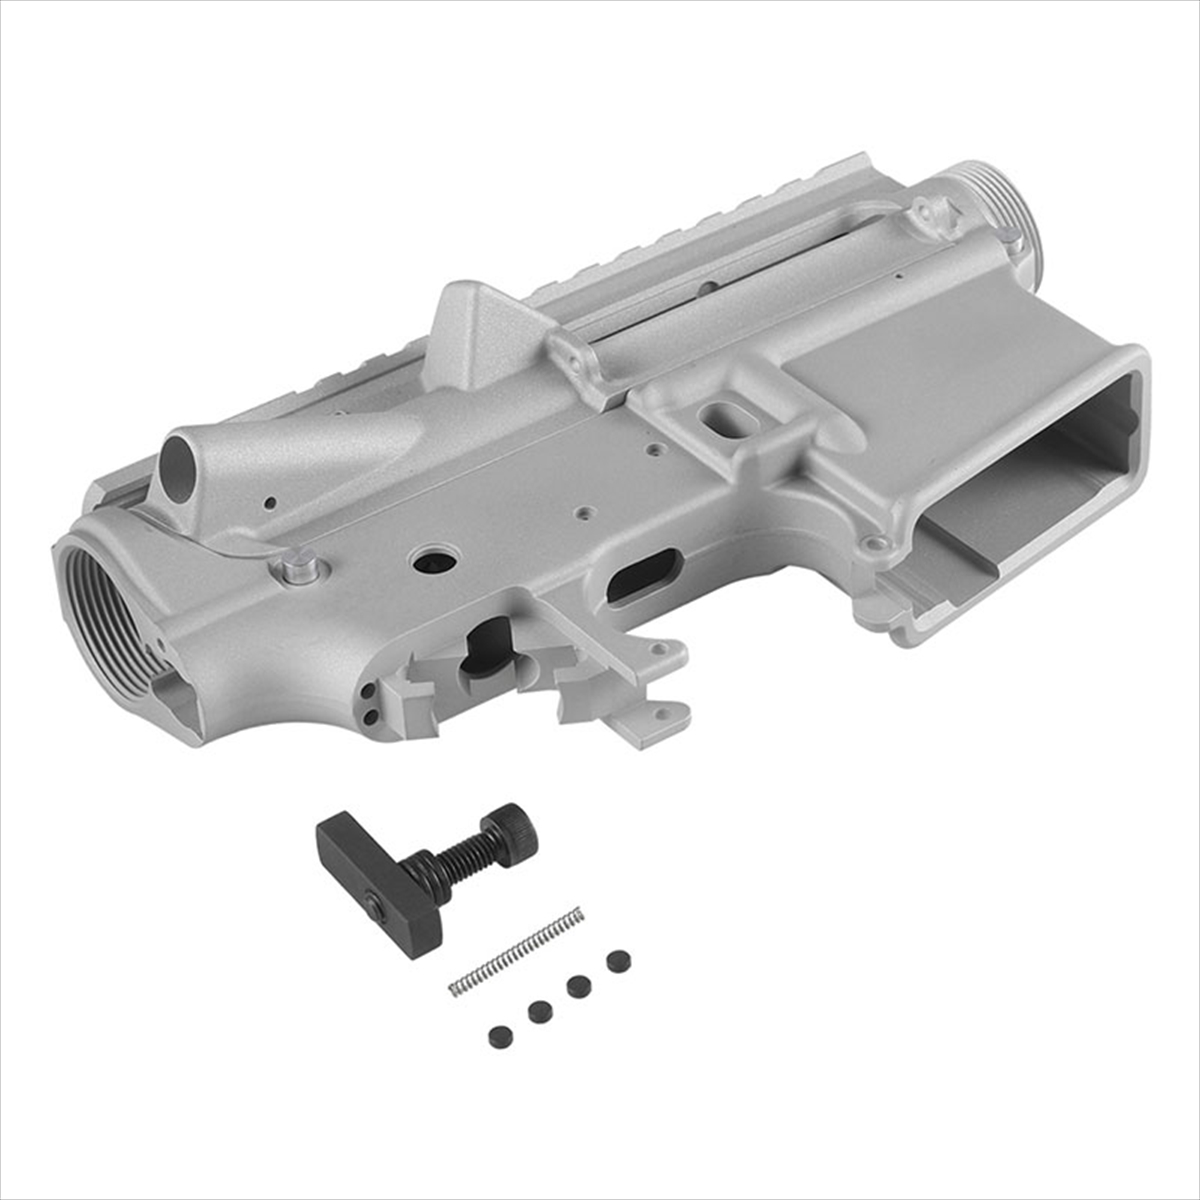 Z-Parts PTW INFINITY対応 M4鍛造レシーバー 無刻印/セミオートVer.